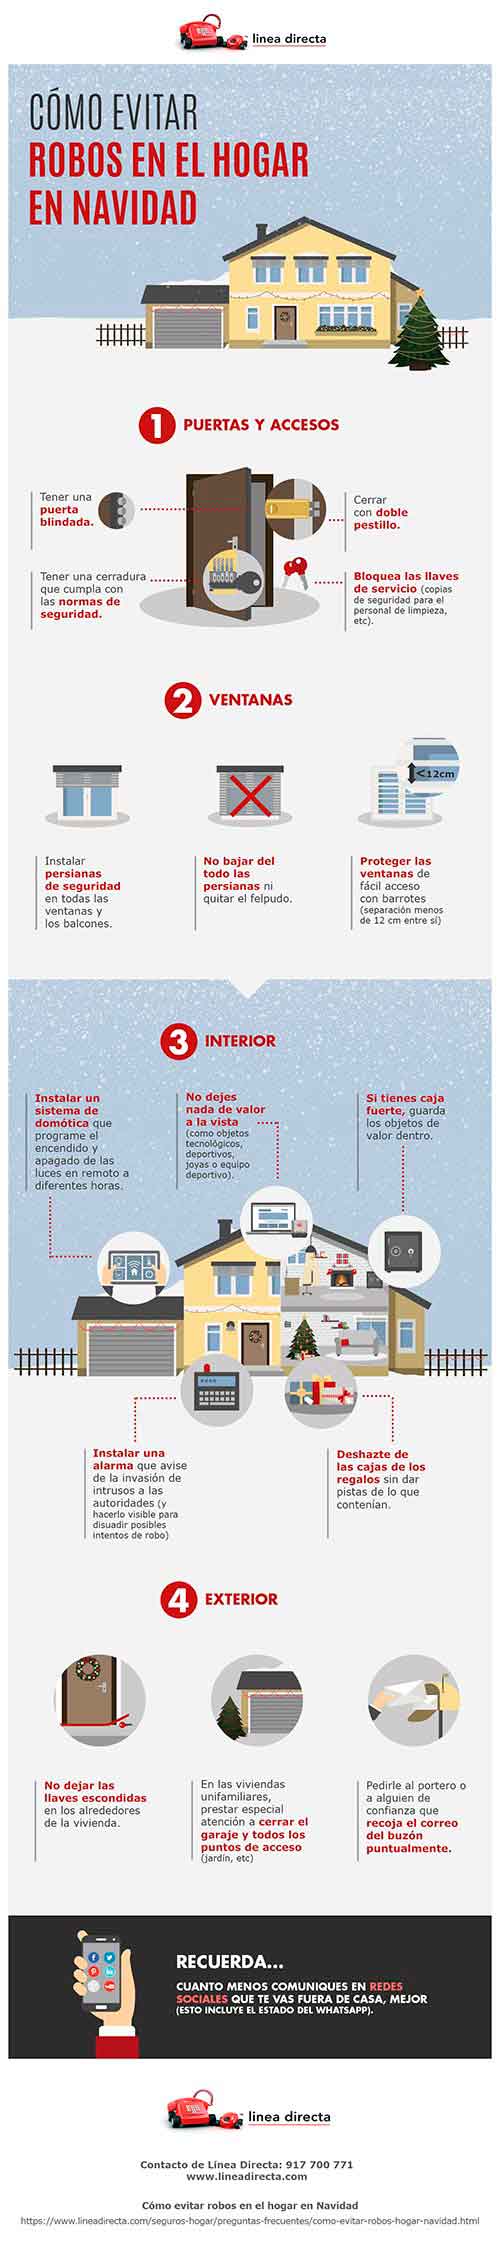 Infografia_¿Cómo evitar robos en Navidad en el hogar?